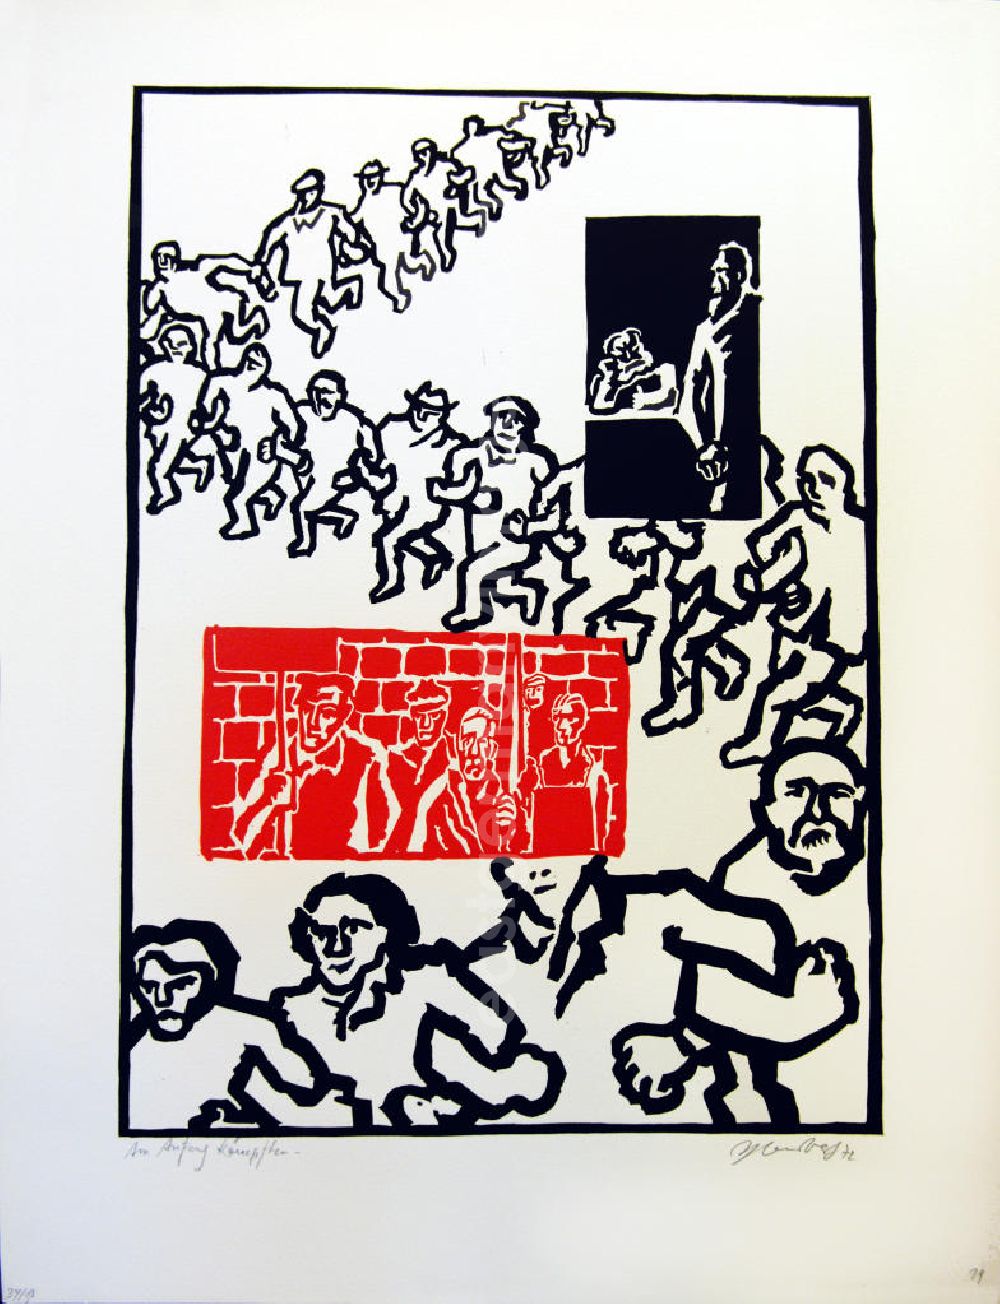 Berlin: Grafik von Herbert Sandberg Motiv 15 aus dem Zyklus Bilder zum Kommunistischen Manifest aus den Jahren 1967-72 mit 30 Decelithschnitten (in Schwarz-Weiß, zusätzlich etzwas Rot) als Illustration zu Marx' und Engels' Manifest der Kommunistischen Partei aus dem Jahr 1847, Grafik zur Textstelle Im Anfang kämpfen die einzelnen Arbeiter, dann die Arbeiter einer Fabrik, dann die Arbeiter eines Arbeitszweiges an einem Ort gegen den einzelnen Bourgeois, der sie direkt ausbeutet. aus dem Jahr 1972, 28,5x39,5cm handsigniert, 34/5